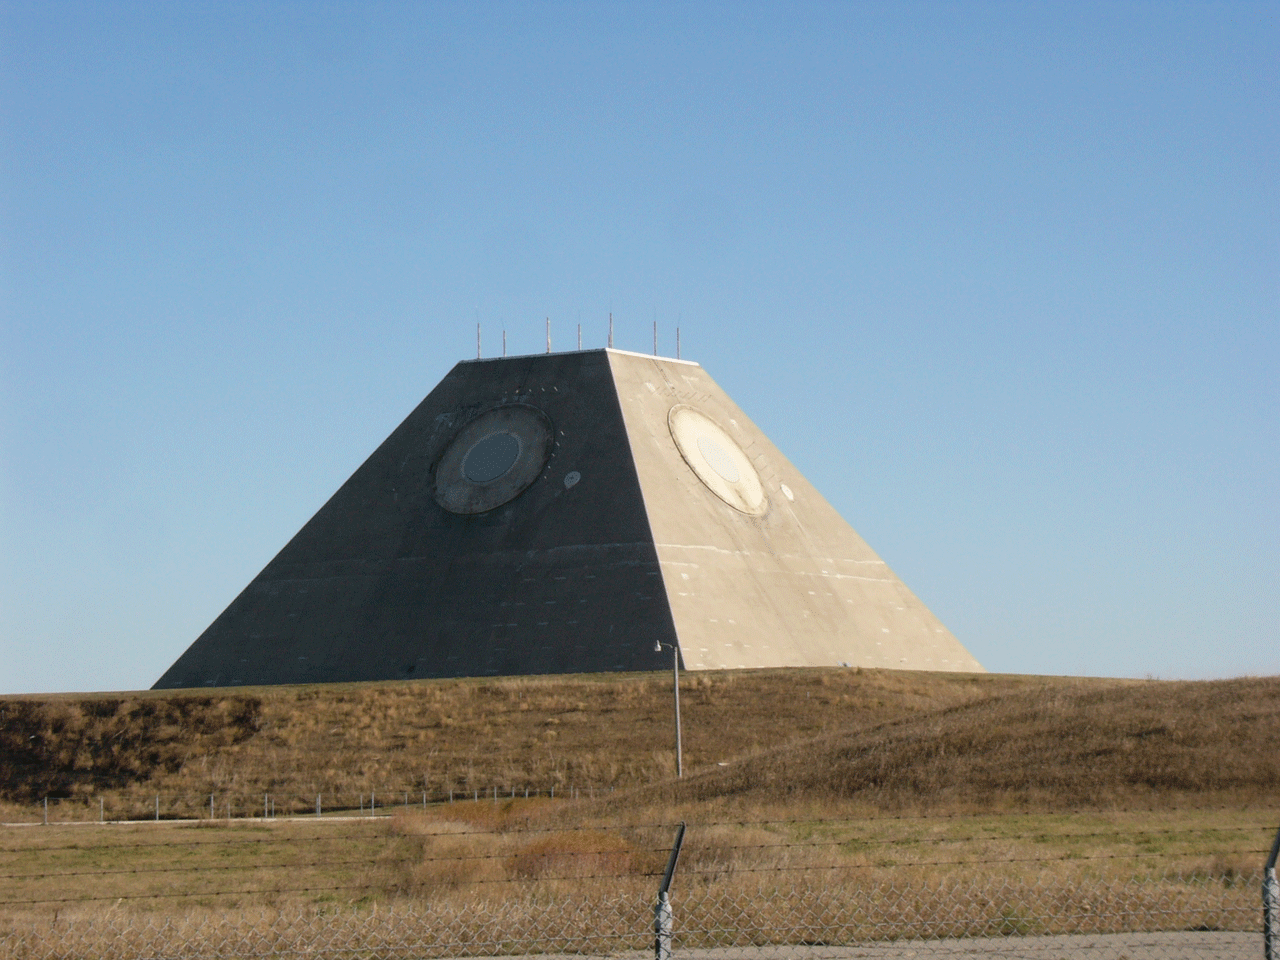 Fotografija prikazuje radarski centar u SADu oblika krnje piramide.